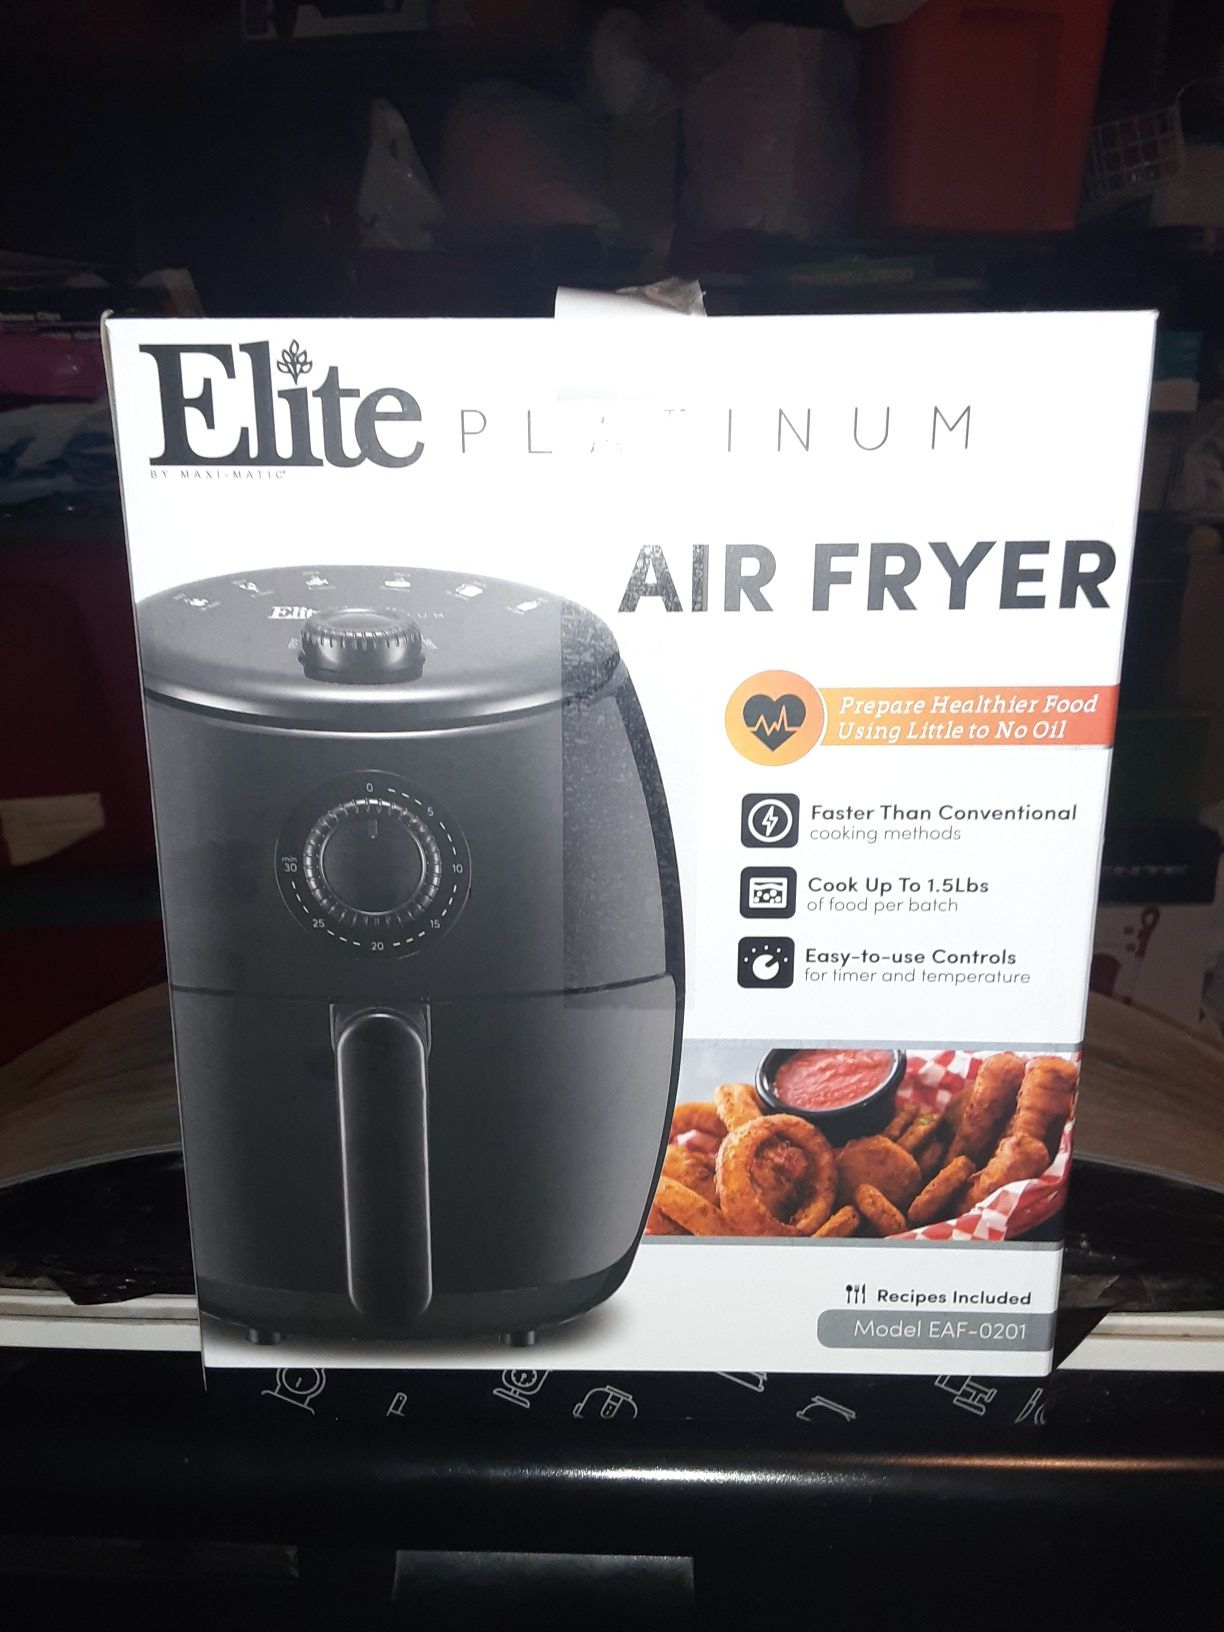 Elite platinum air fryer 2.1 Q.T. oil free